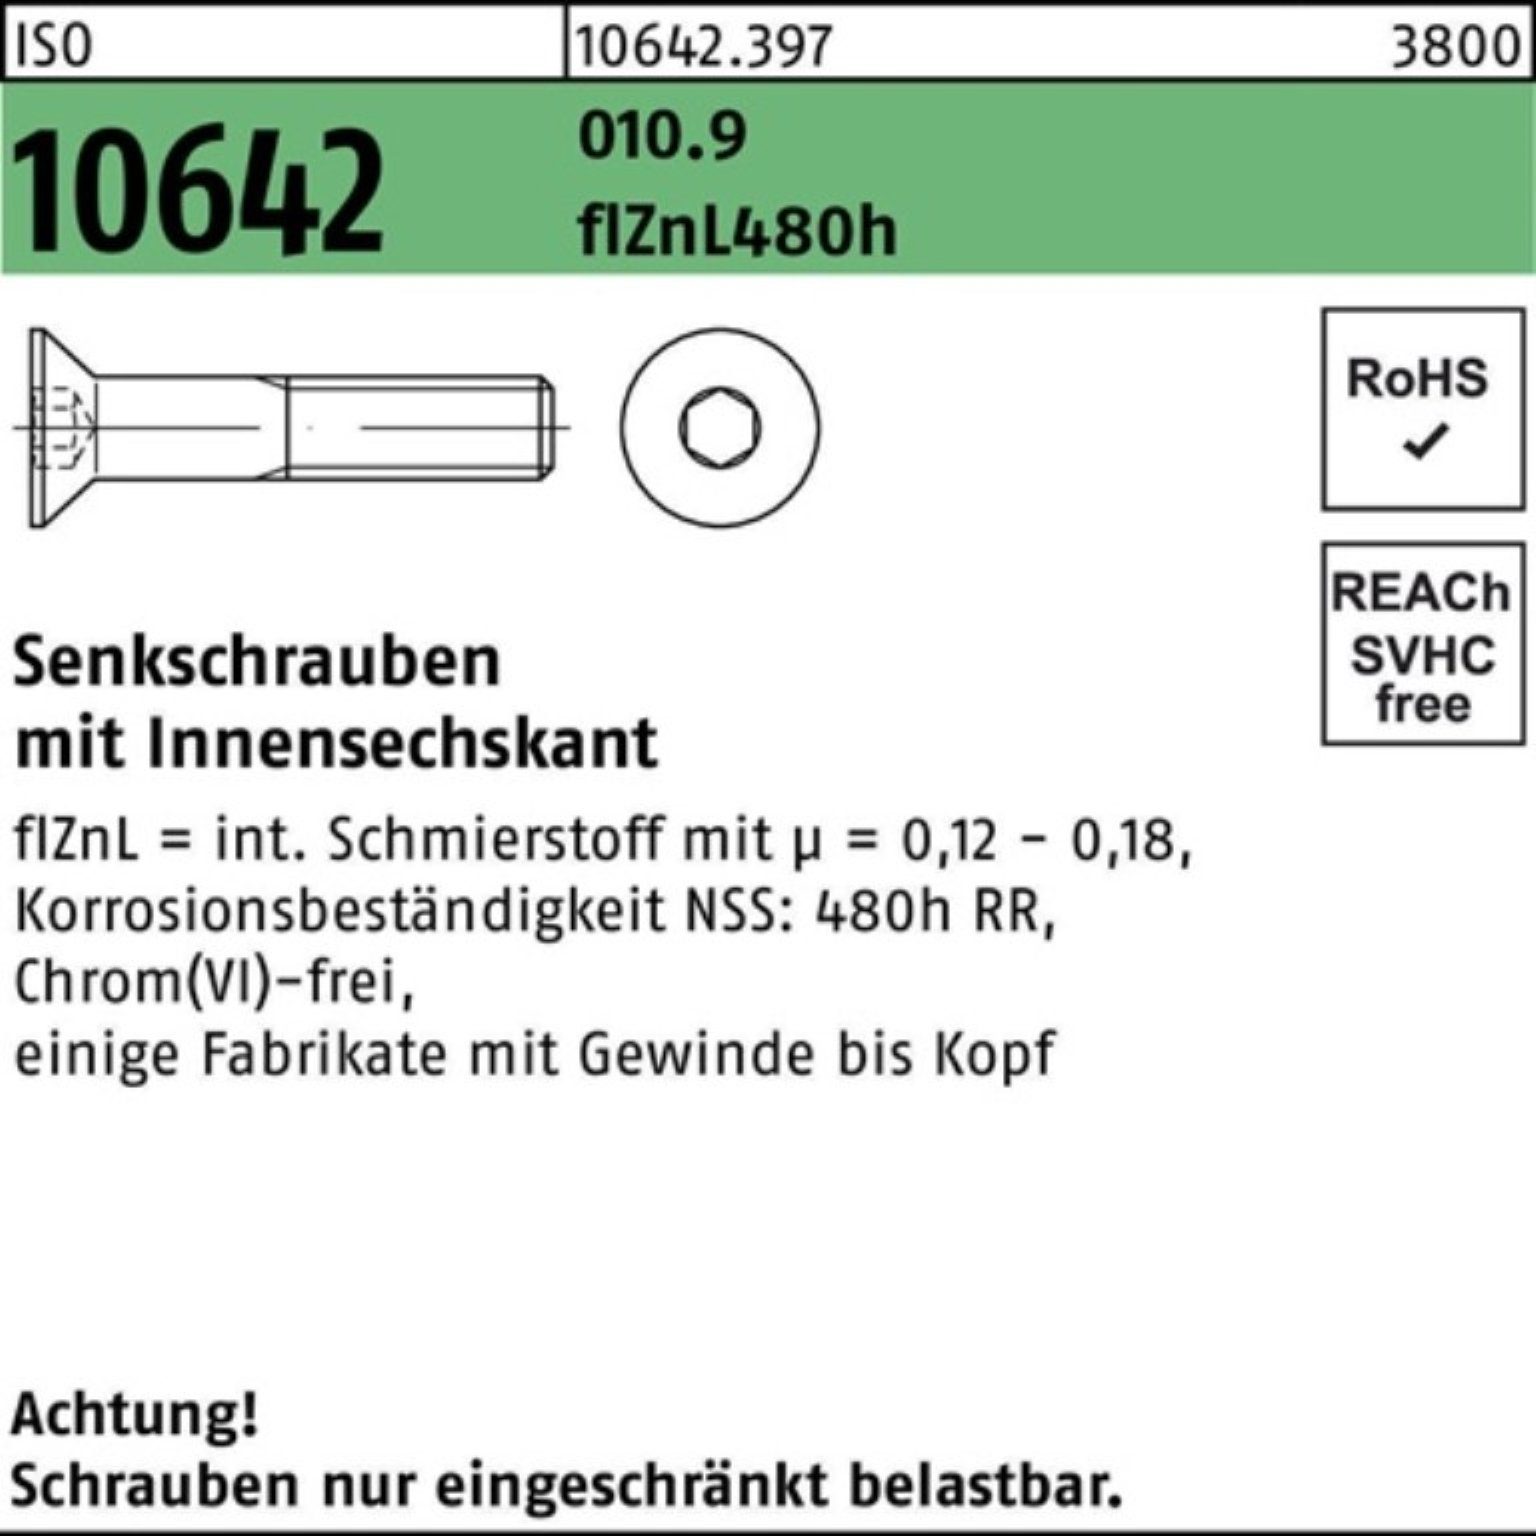 Reyher Senkschraube 100er Pack Senkschraube ISO 10642 Innen-6kt M12x60 010.9 flZnL 480h zi